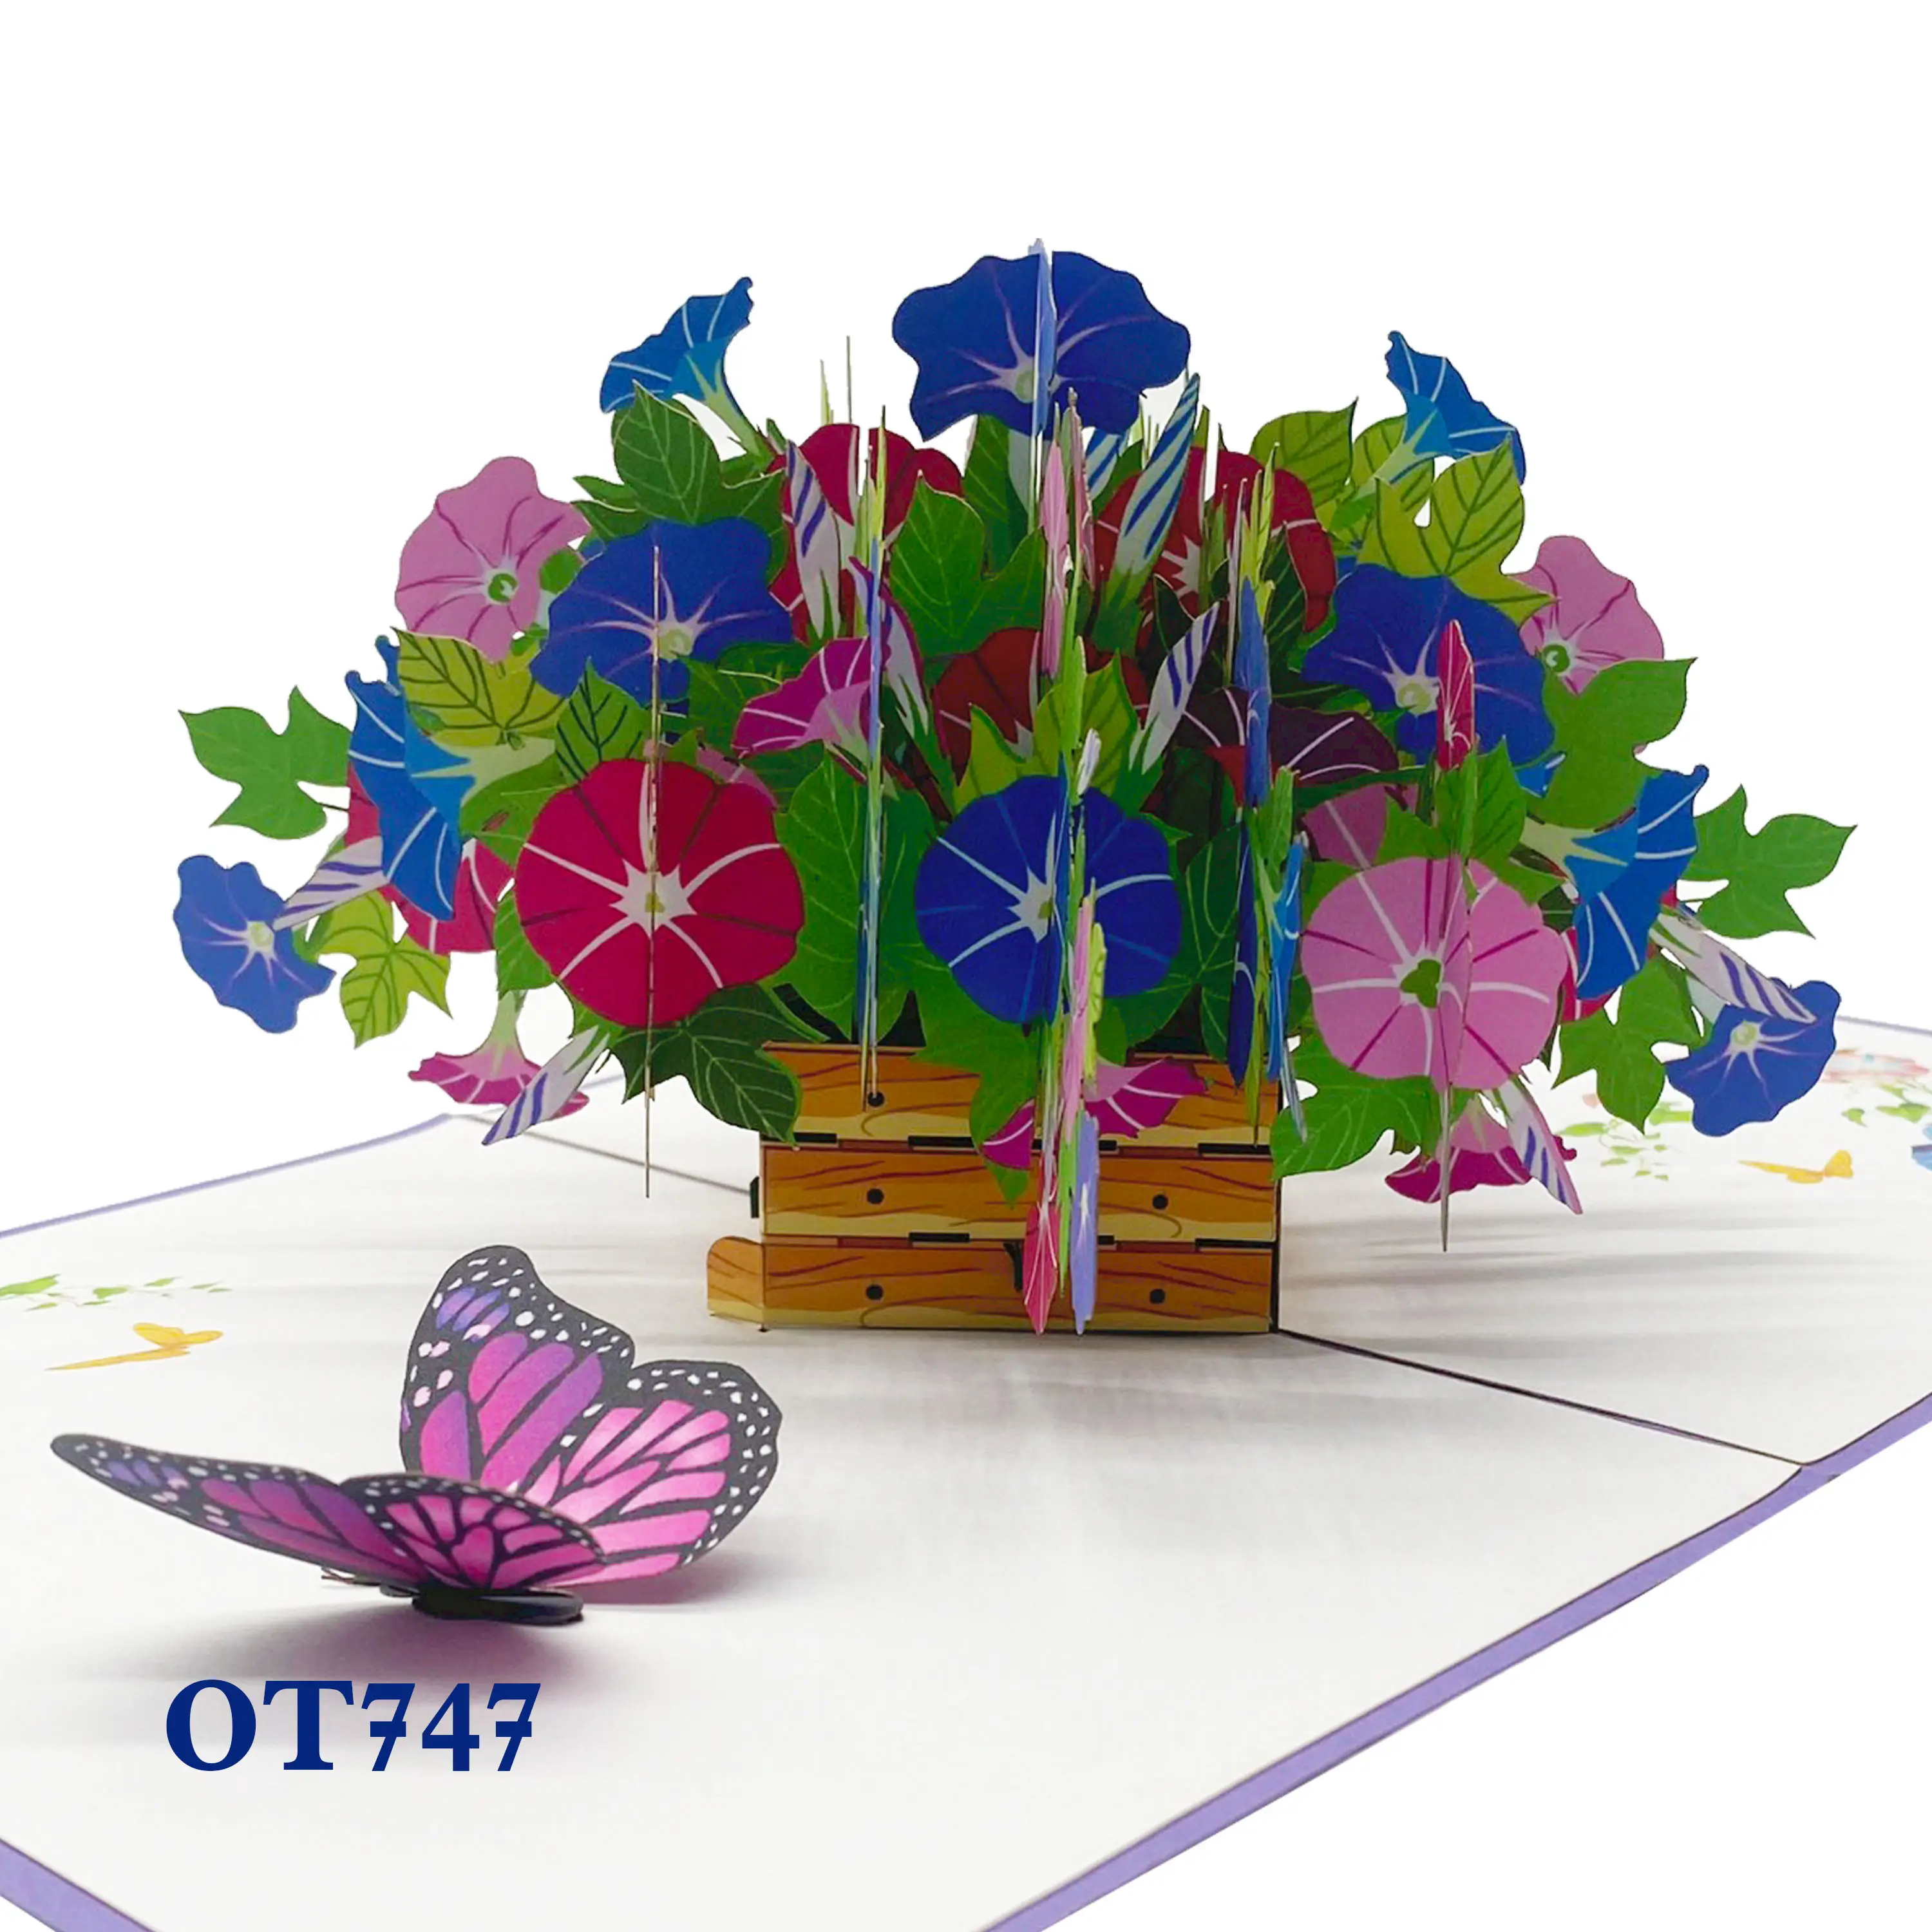 Artesanías de papel Tarjeta de felicitación de papel de flores personalizada 3D pop up gracias Día de la madre gracias Tarjeta de celebración navideña hecha en Vietnam